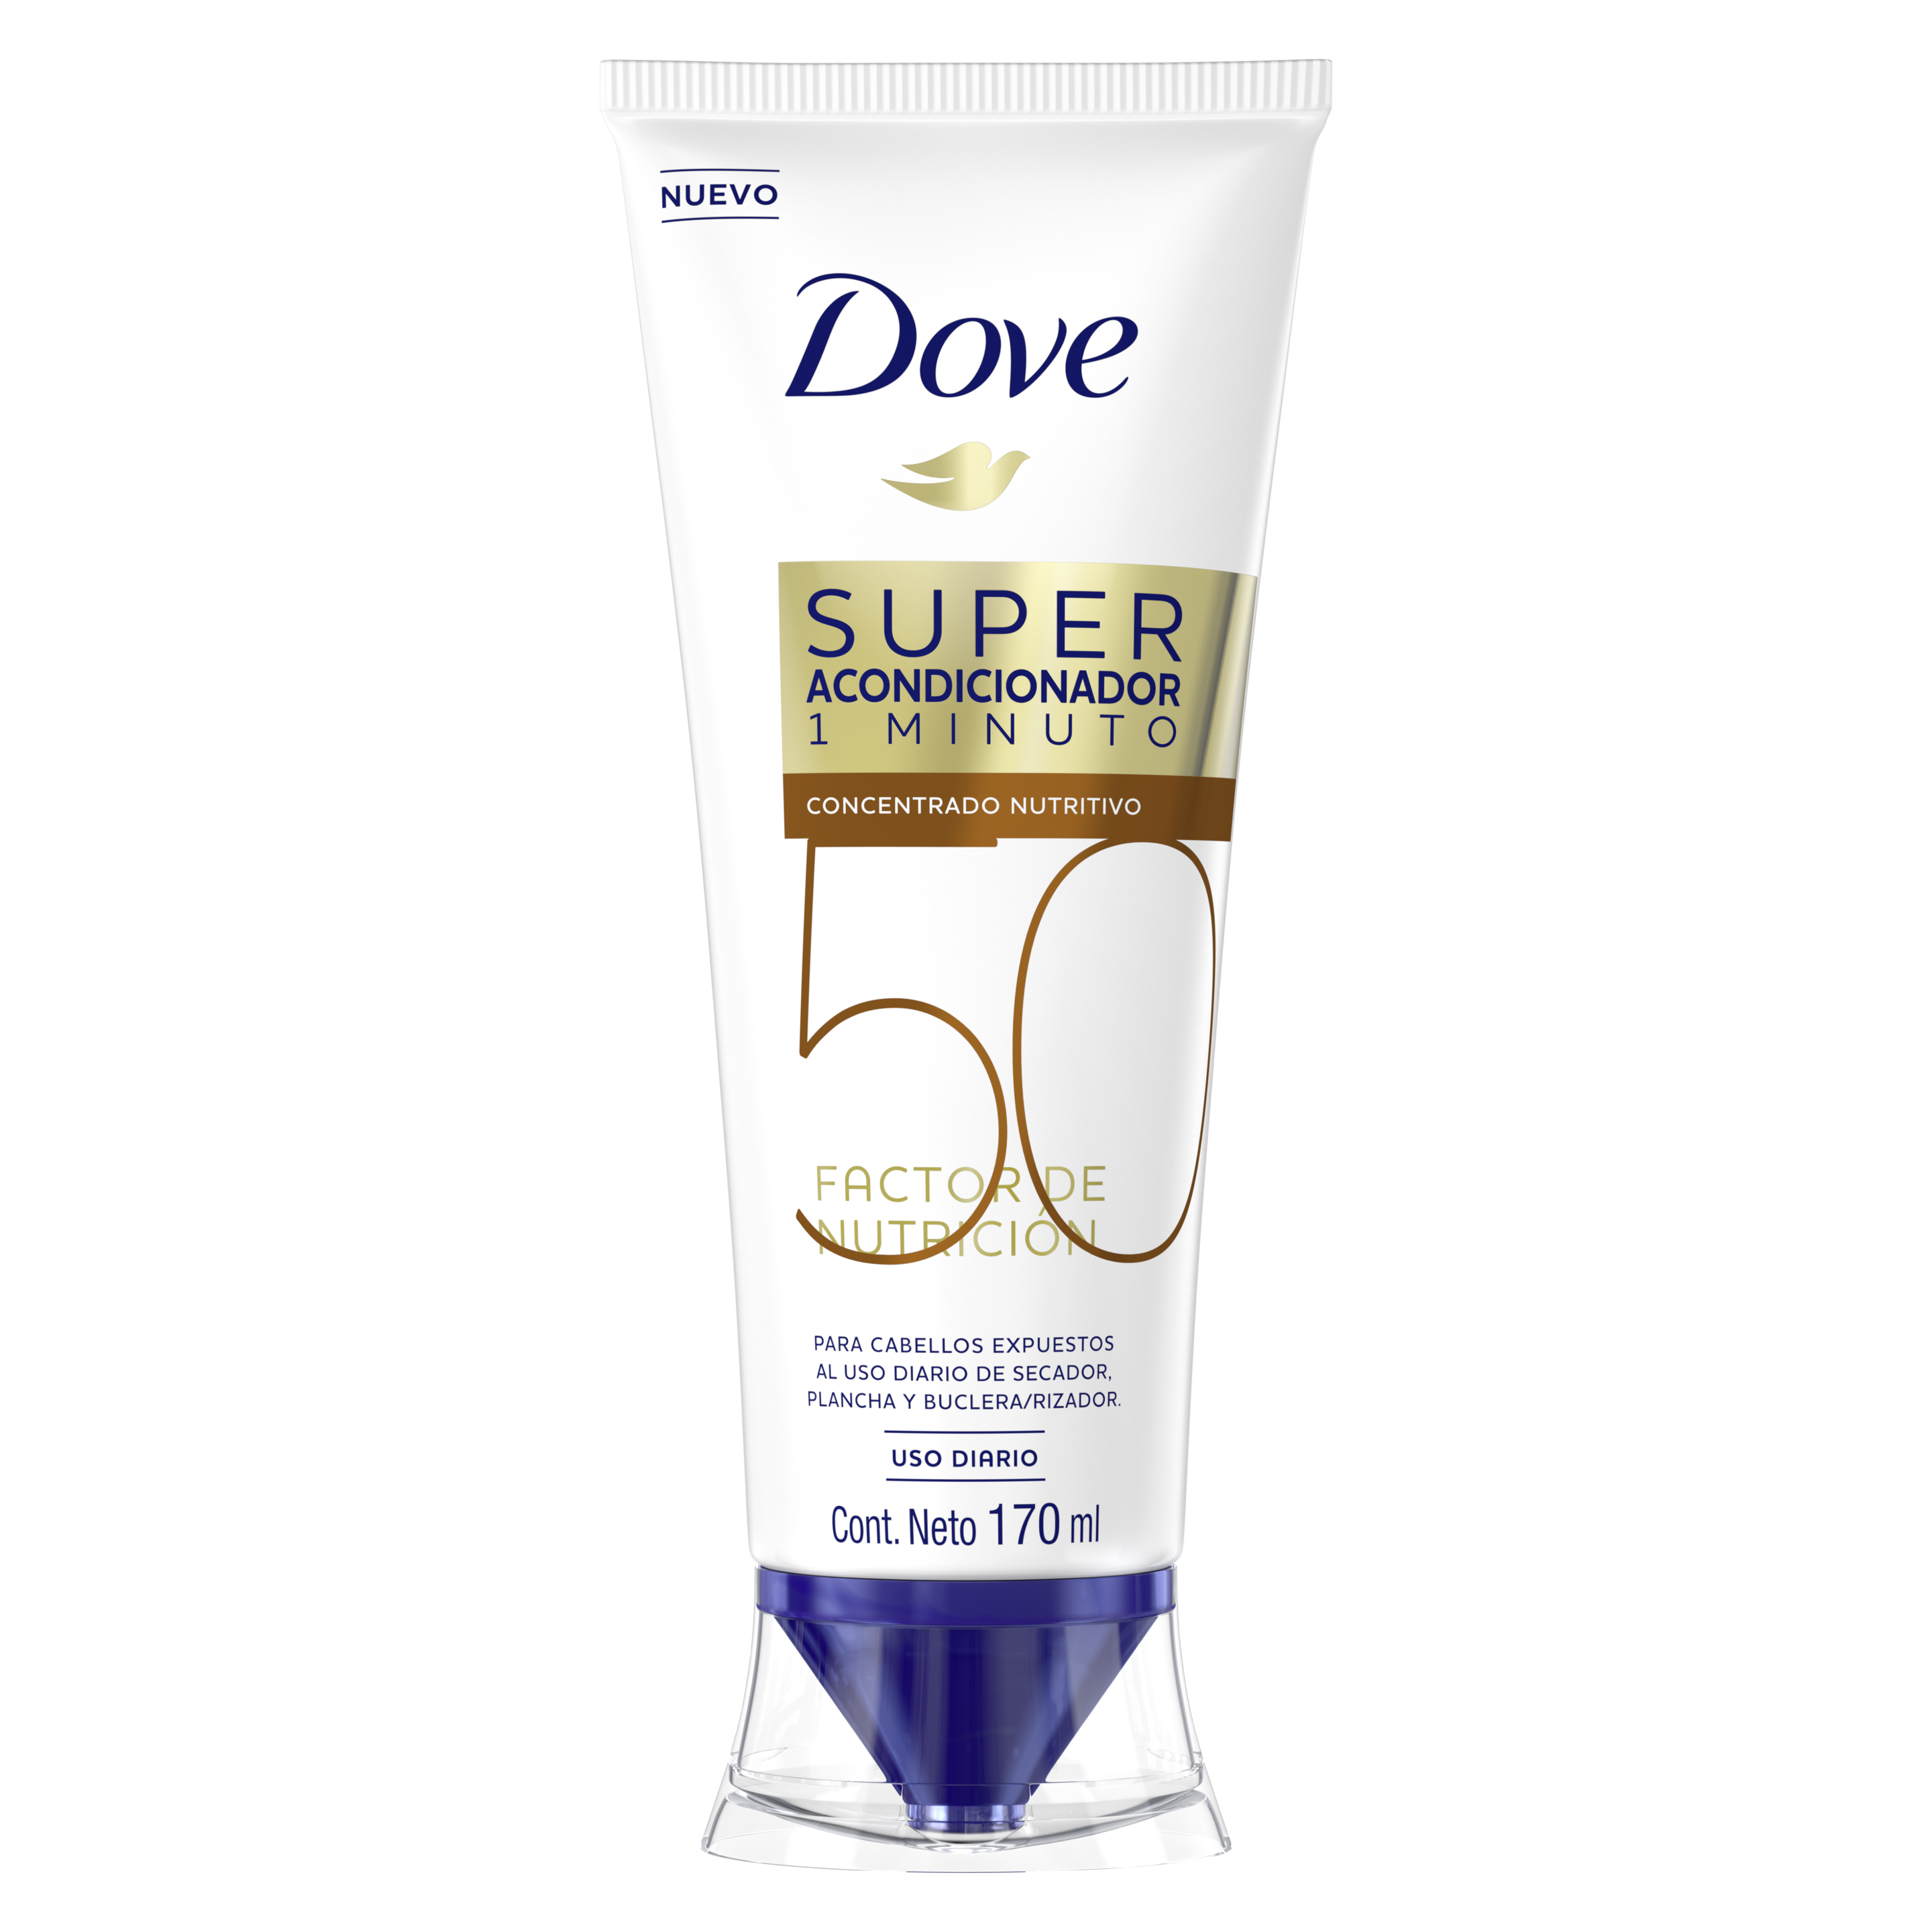 Dove Super Acondicionador 1 minuto Factor de Nutrición 50